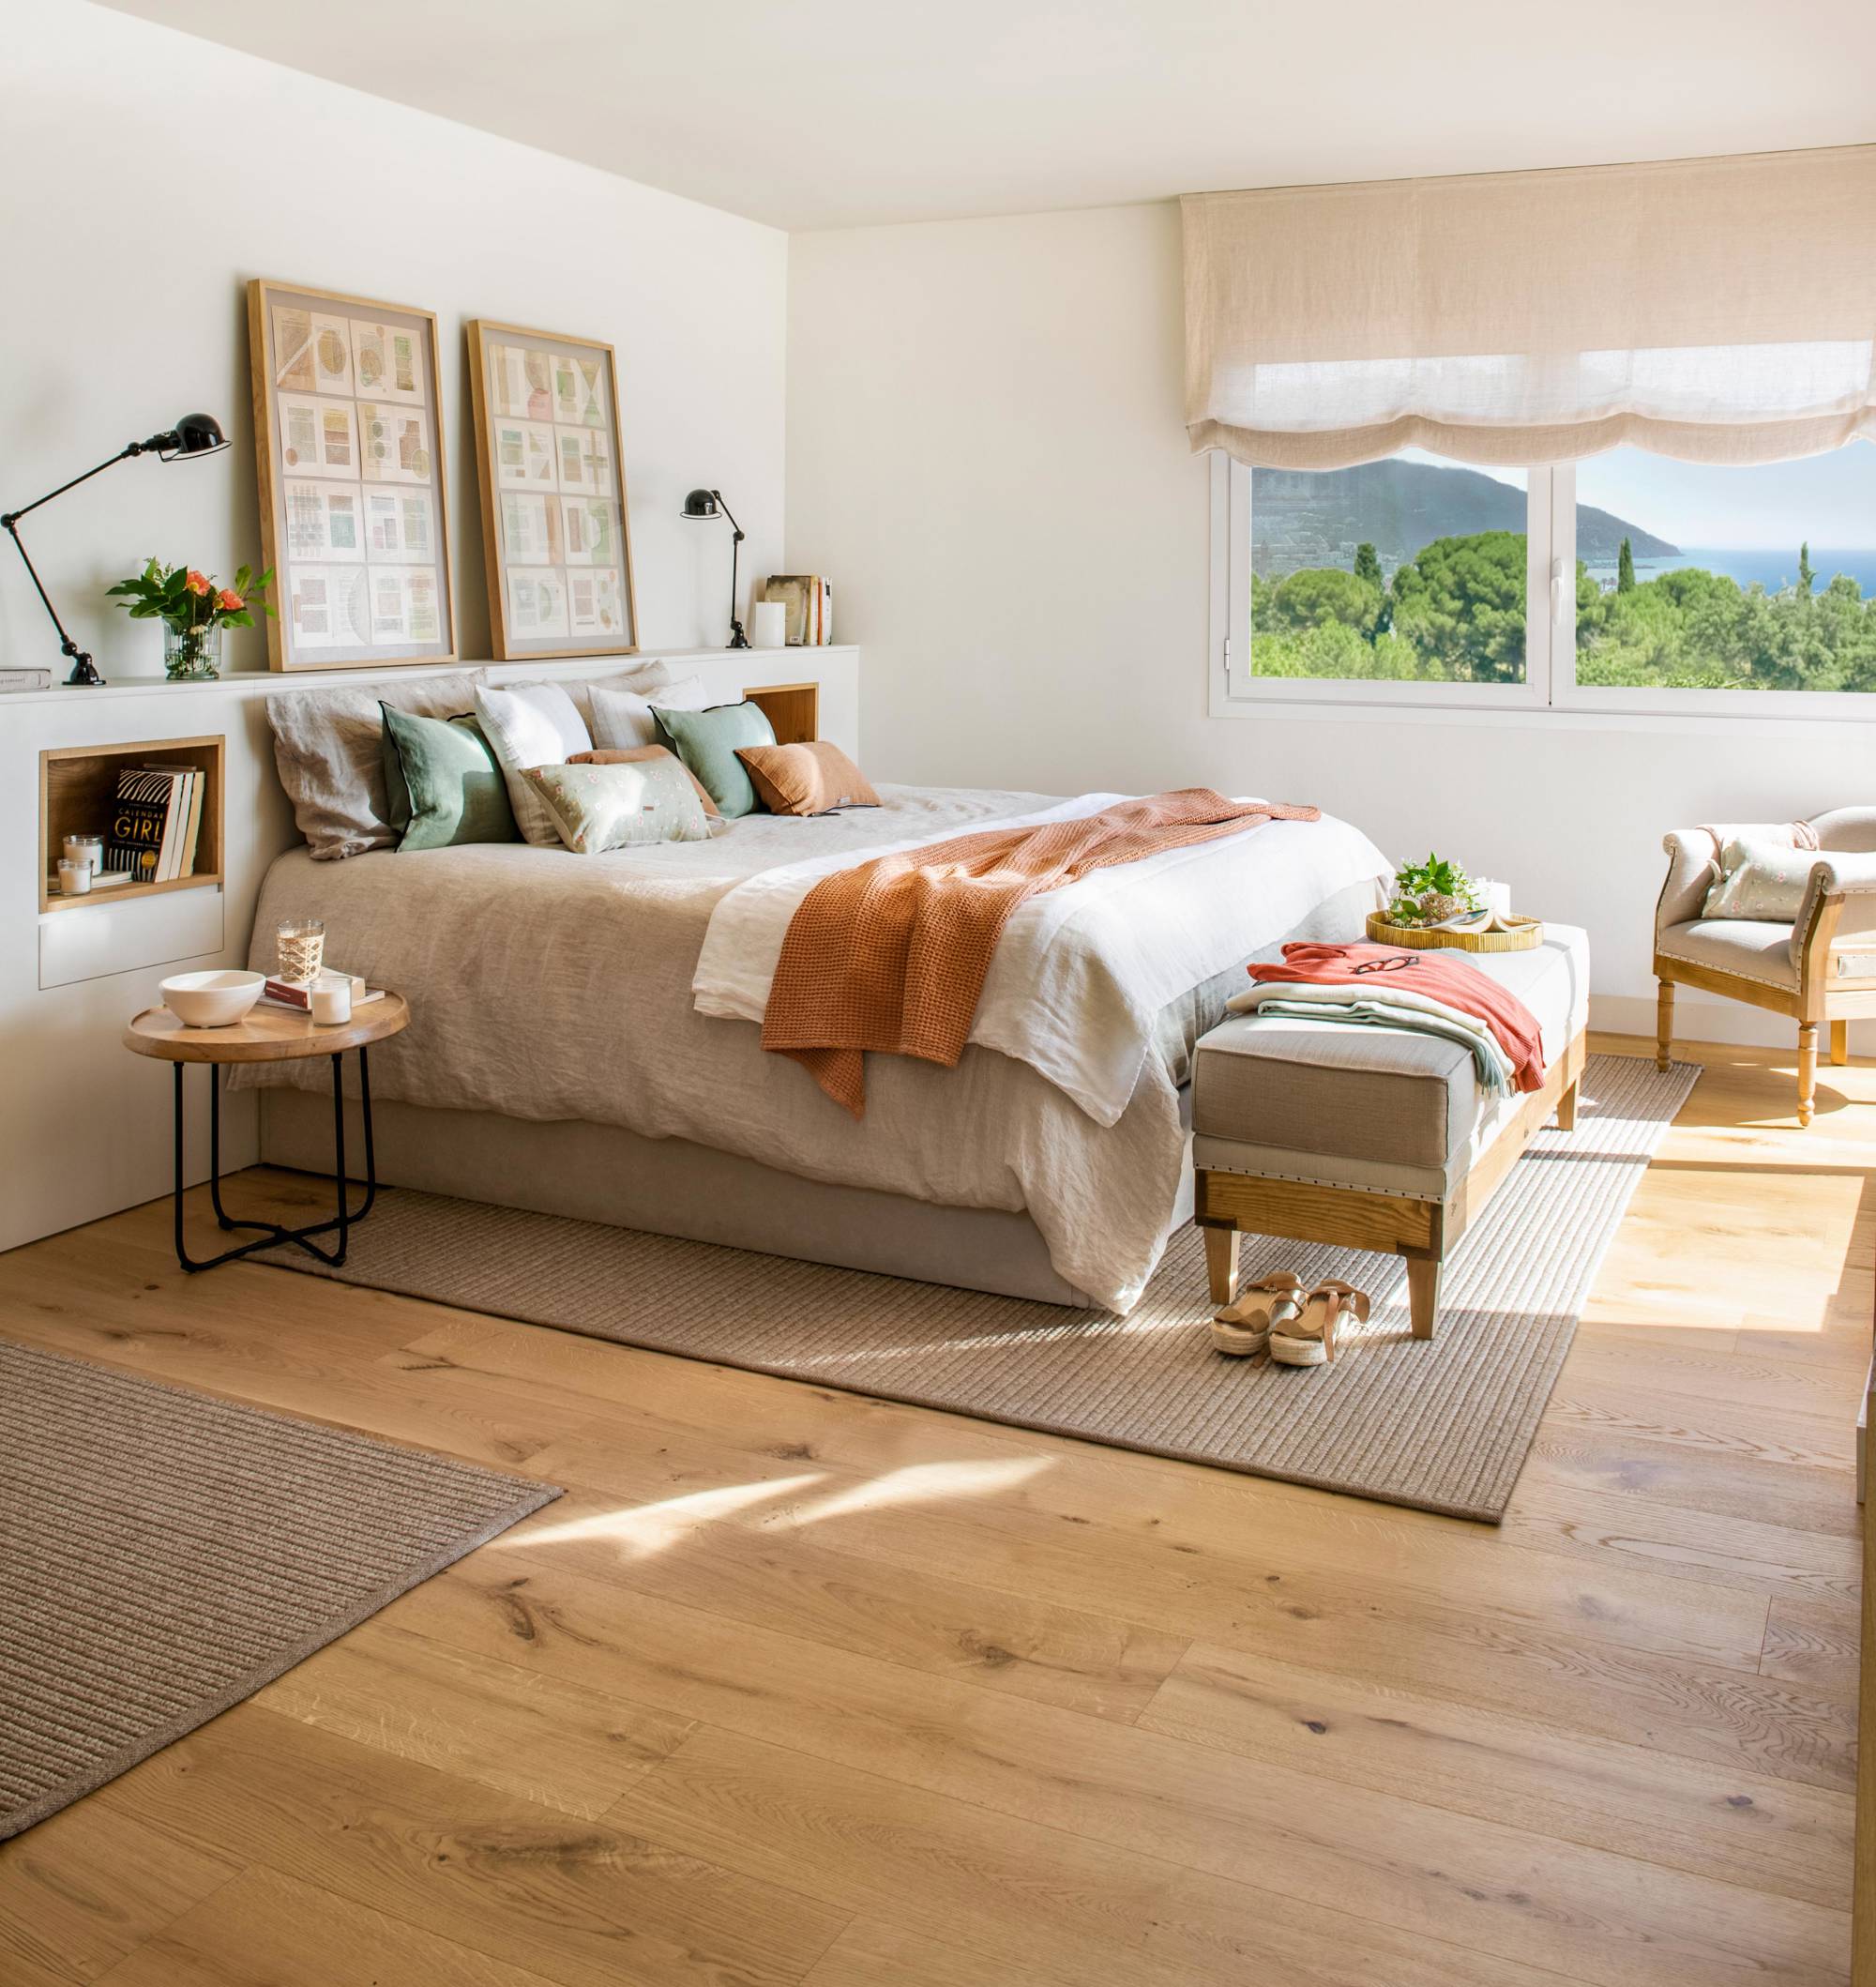 Dormitorio con suelo de madera con vetas